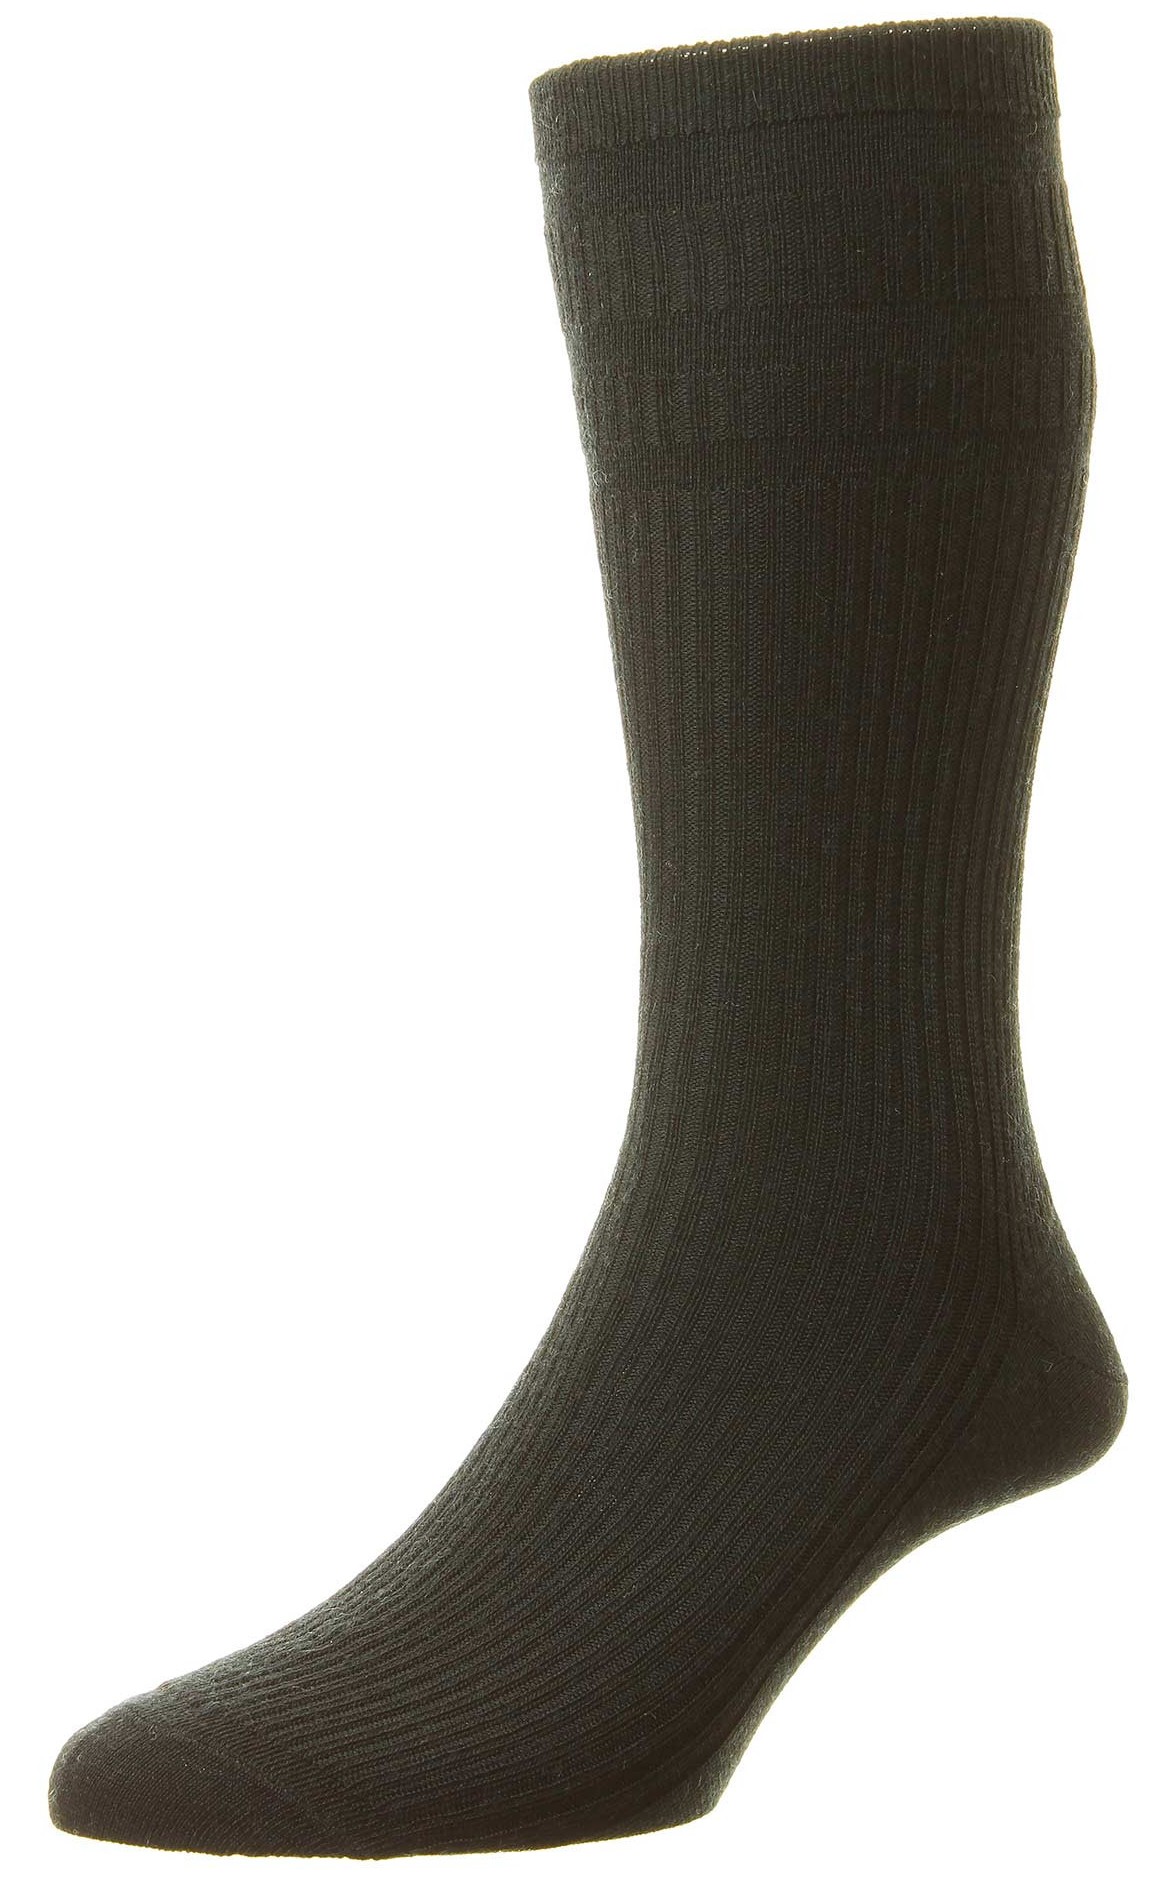 HJ Socks HJ190 Navy Shoe size 11-13